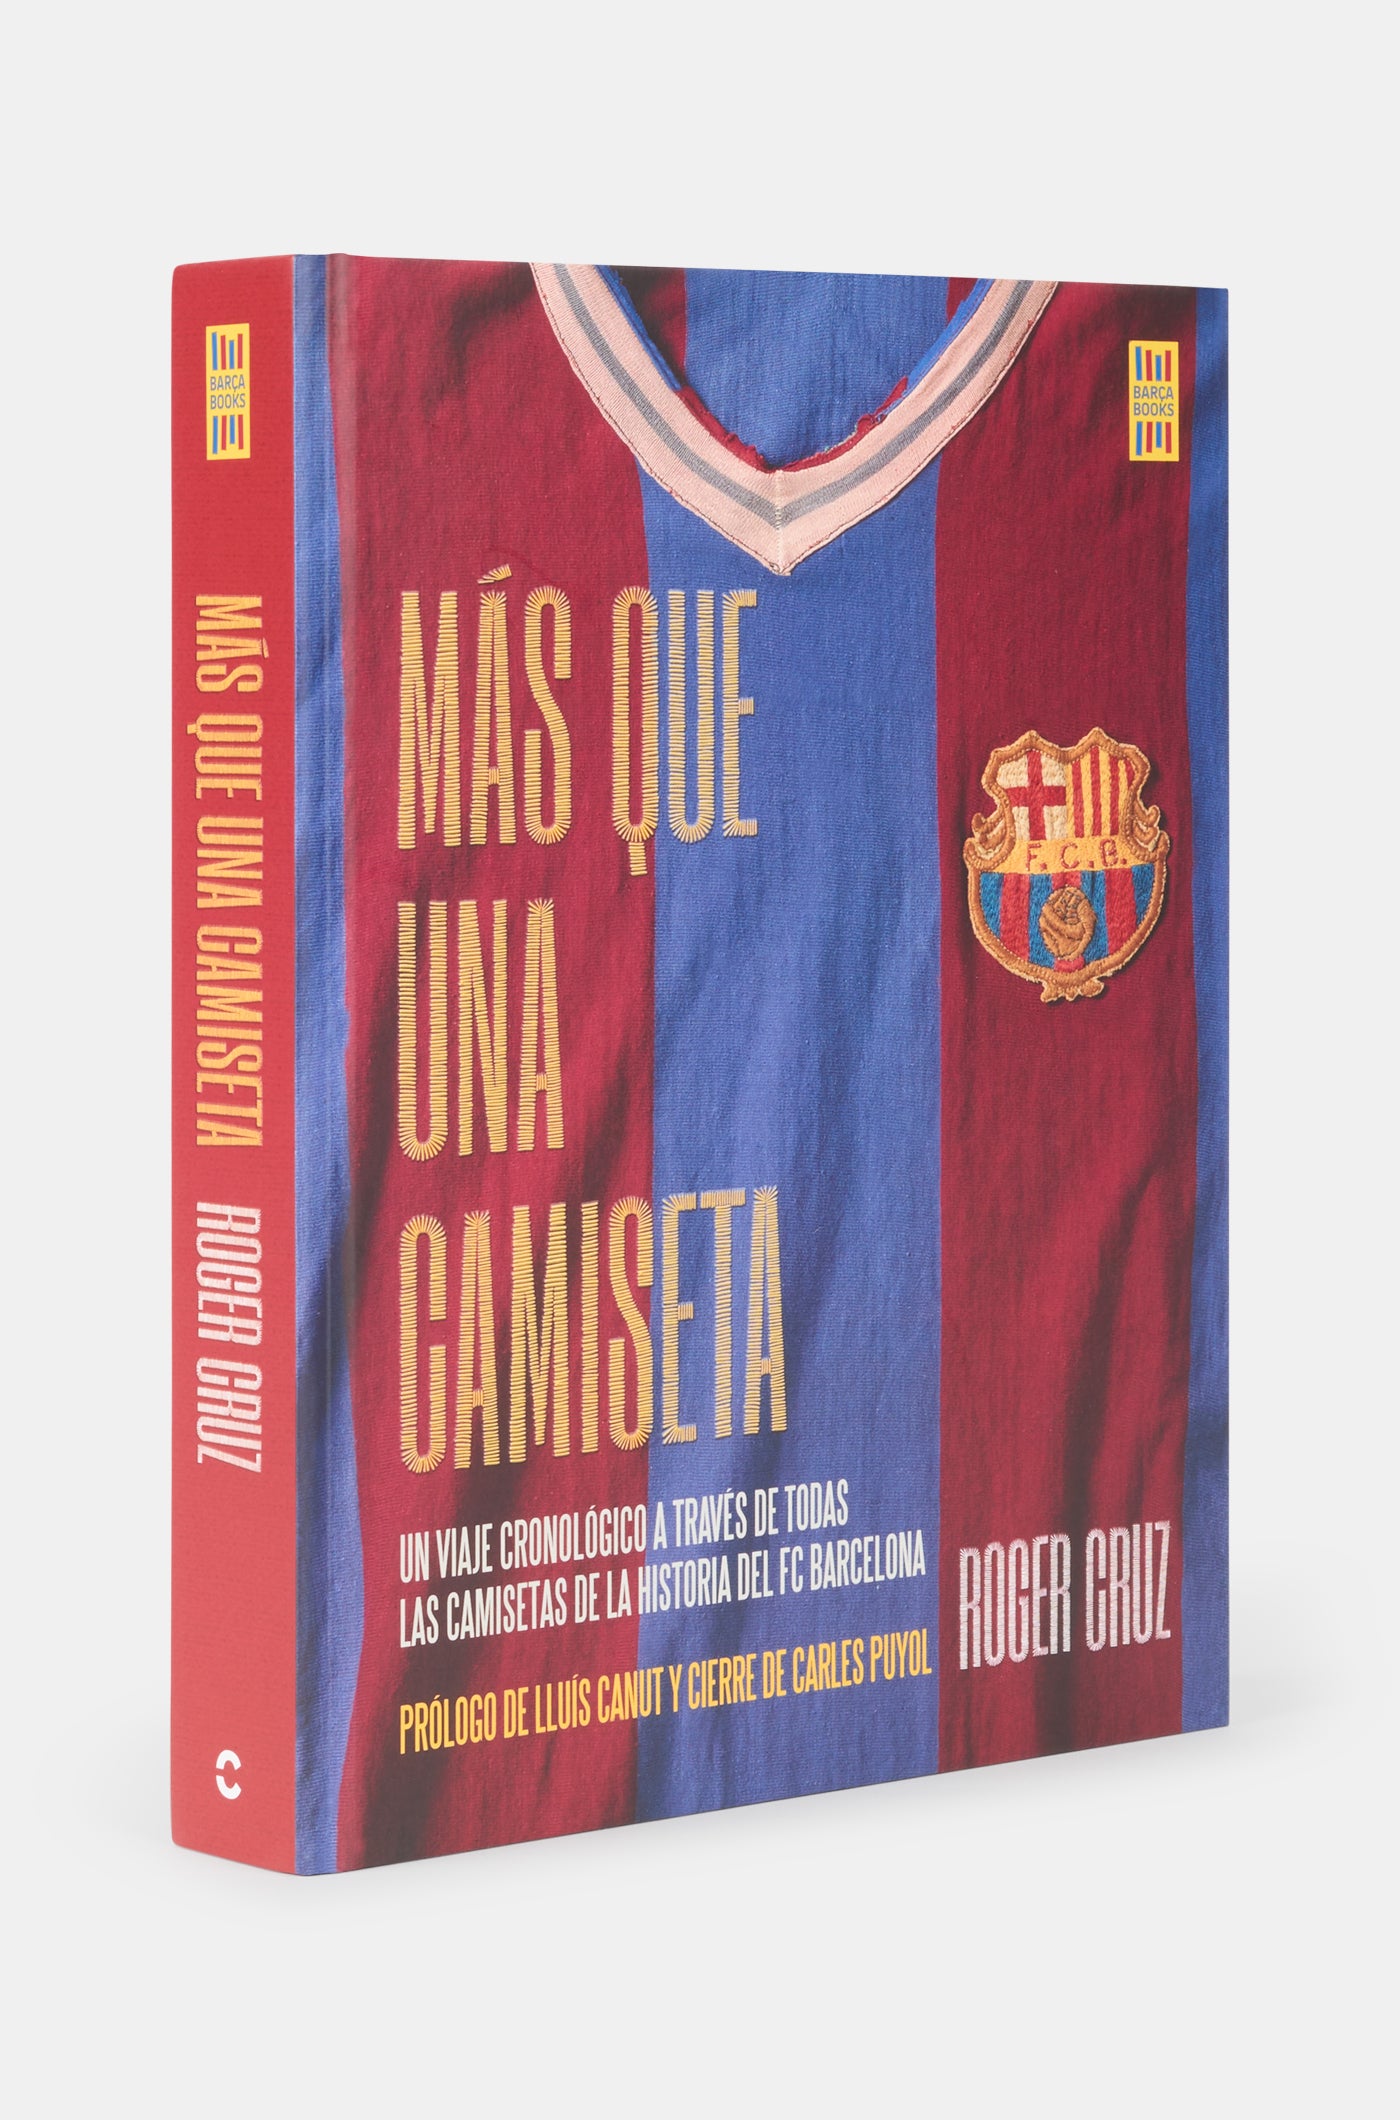 Book "Más que una camiseta" - Spanish